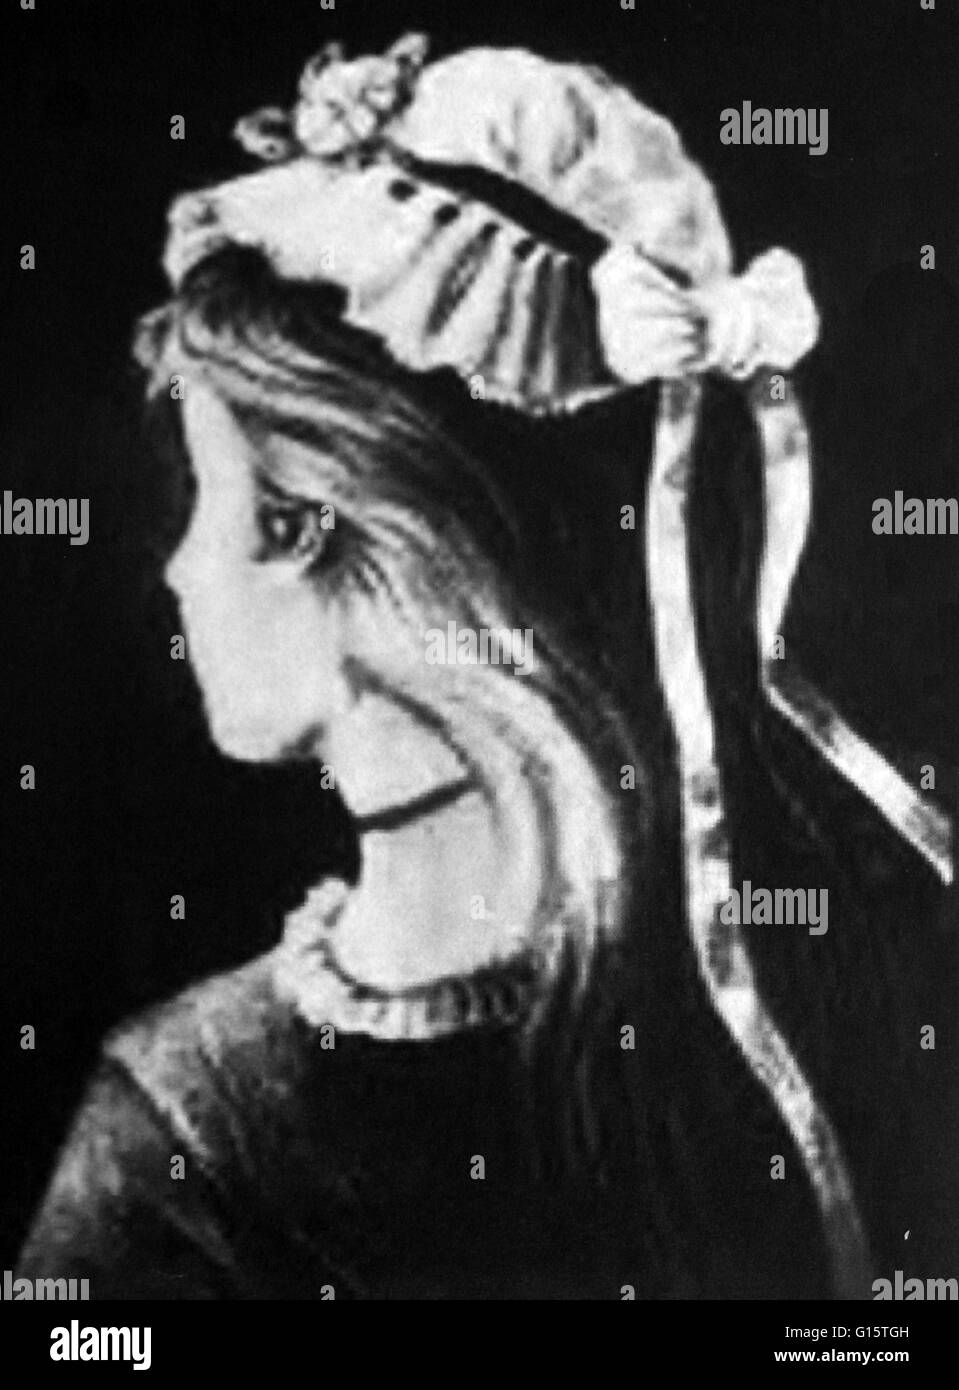 Carte postale allemande anonyme de 1888. Une célèbre illusion perceptive dans laquelle le cerveau passe entre voir une jeune fille et une vieille femme. Une illusion d'optique est un phénomène où l'on semble voir quelque chose qui n'existe pas ou avec une autre perspective. Banque D'Images